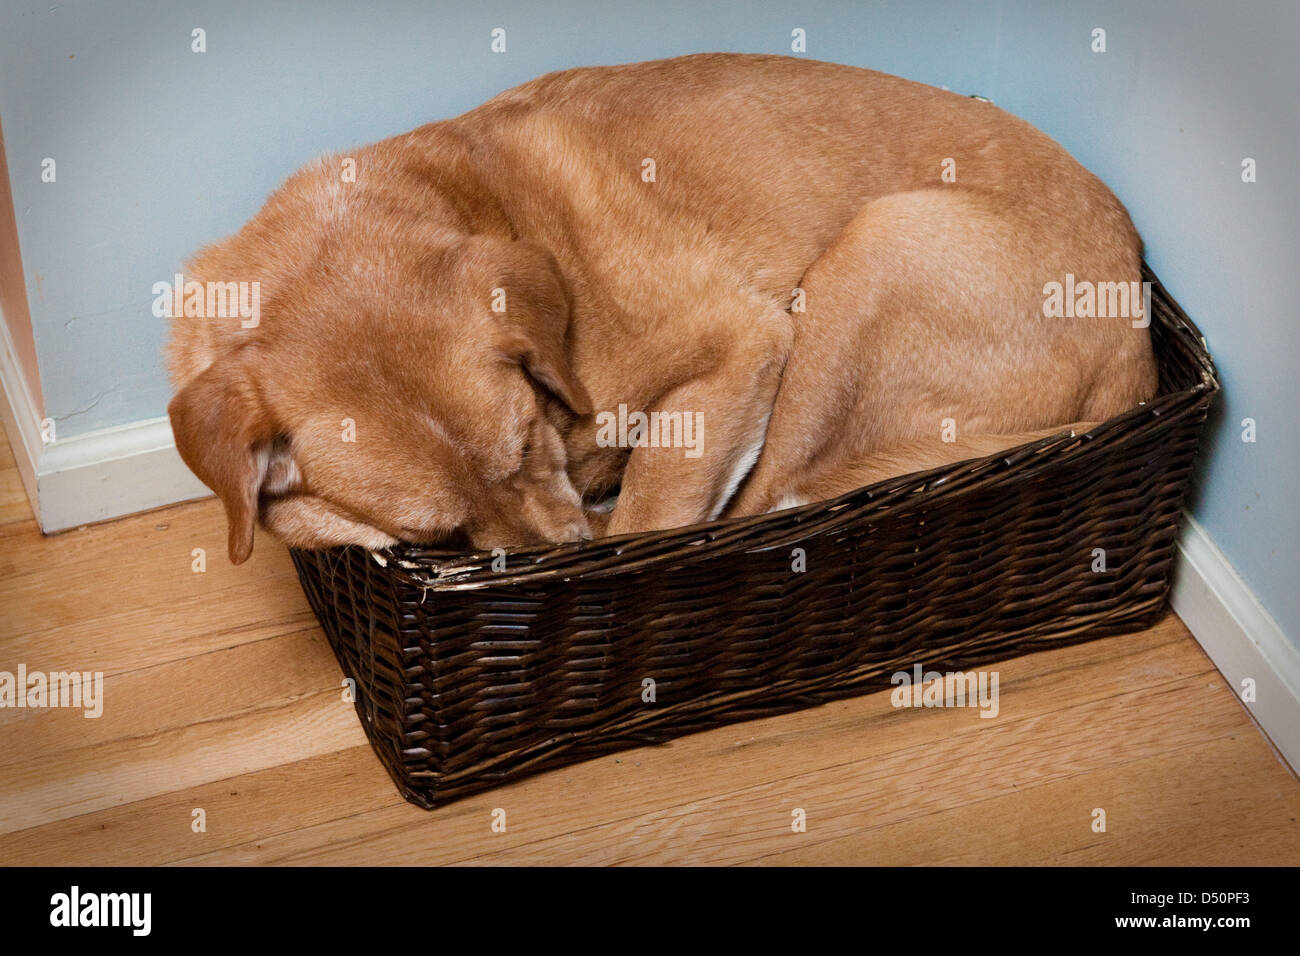 Yellow Labrador Retriever dog sleeping in a basket. Stock Photo